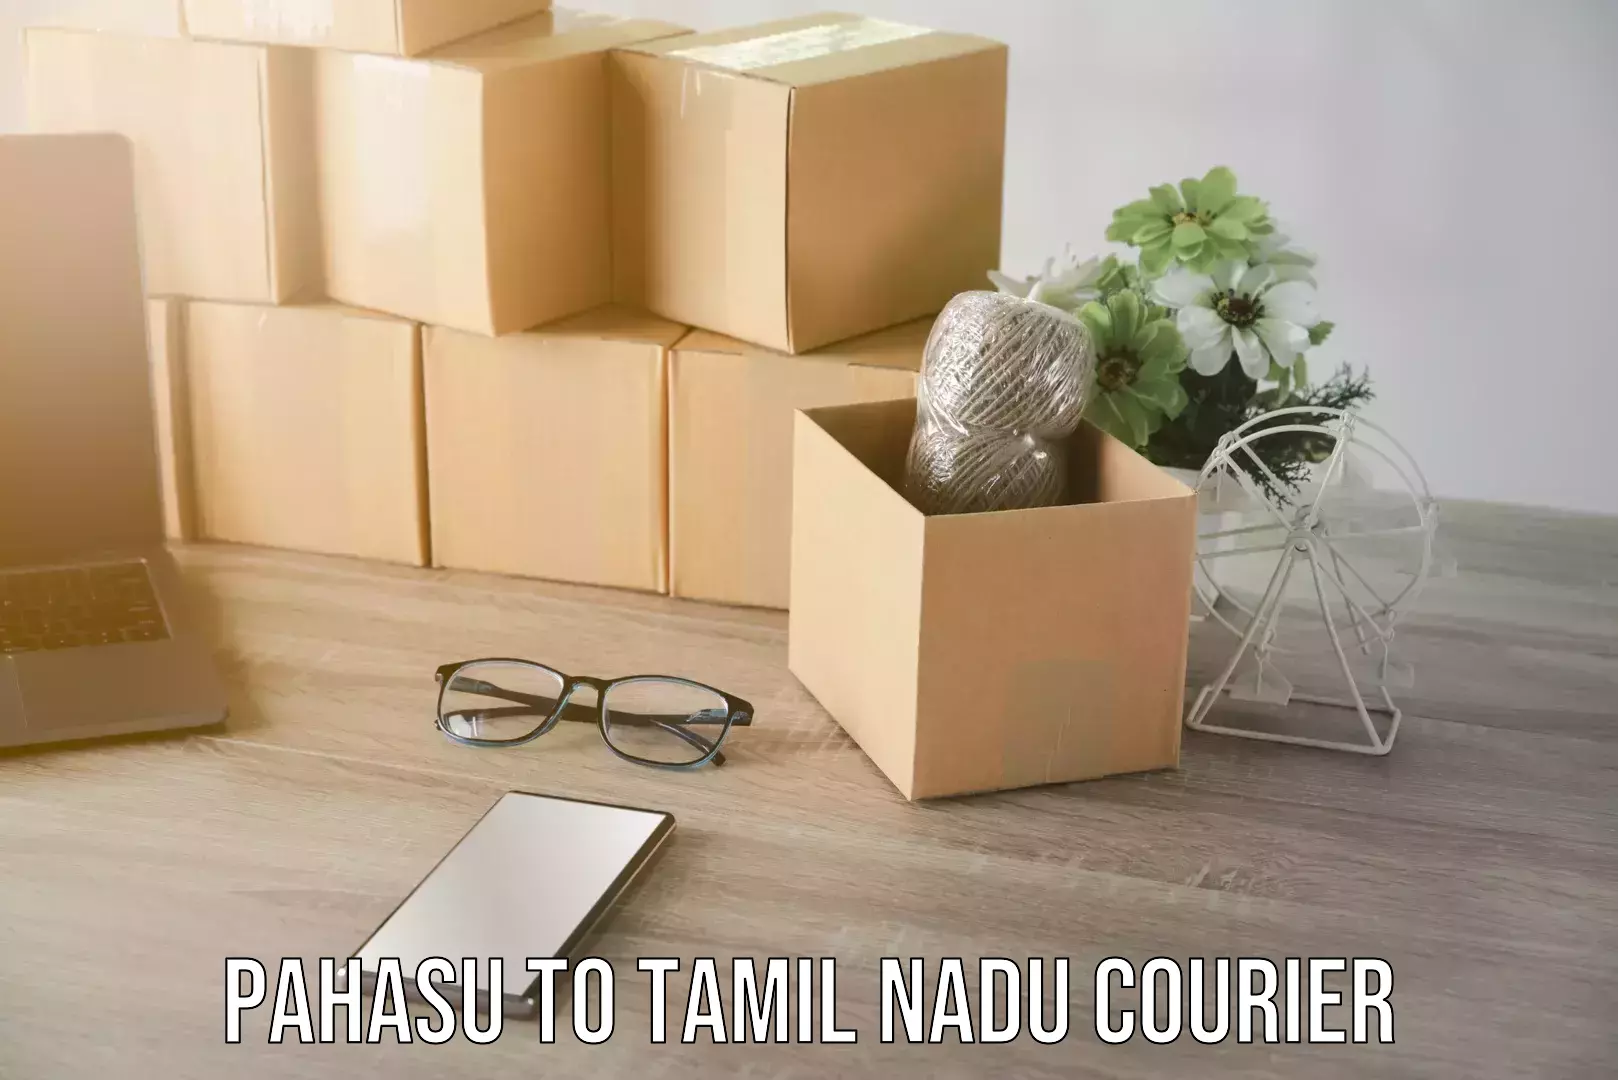 Efficient moving strategies Pahasu to Tamil Nadu